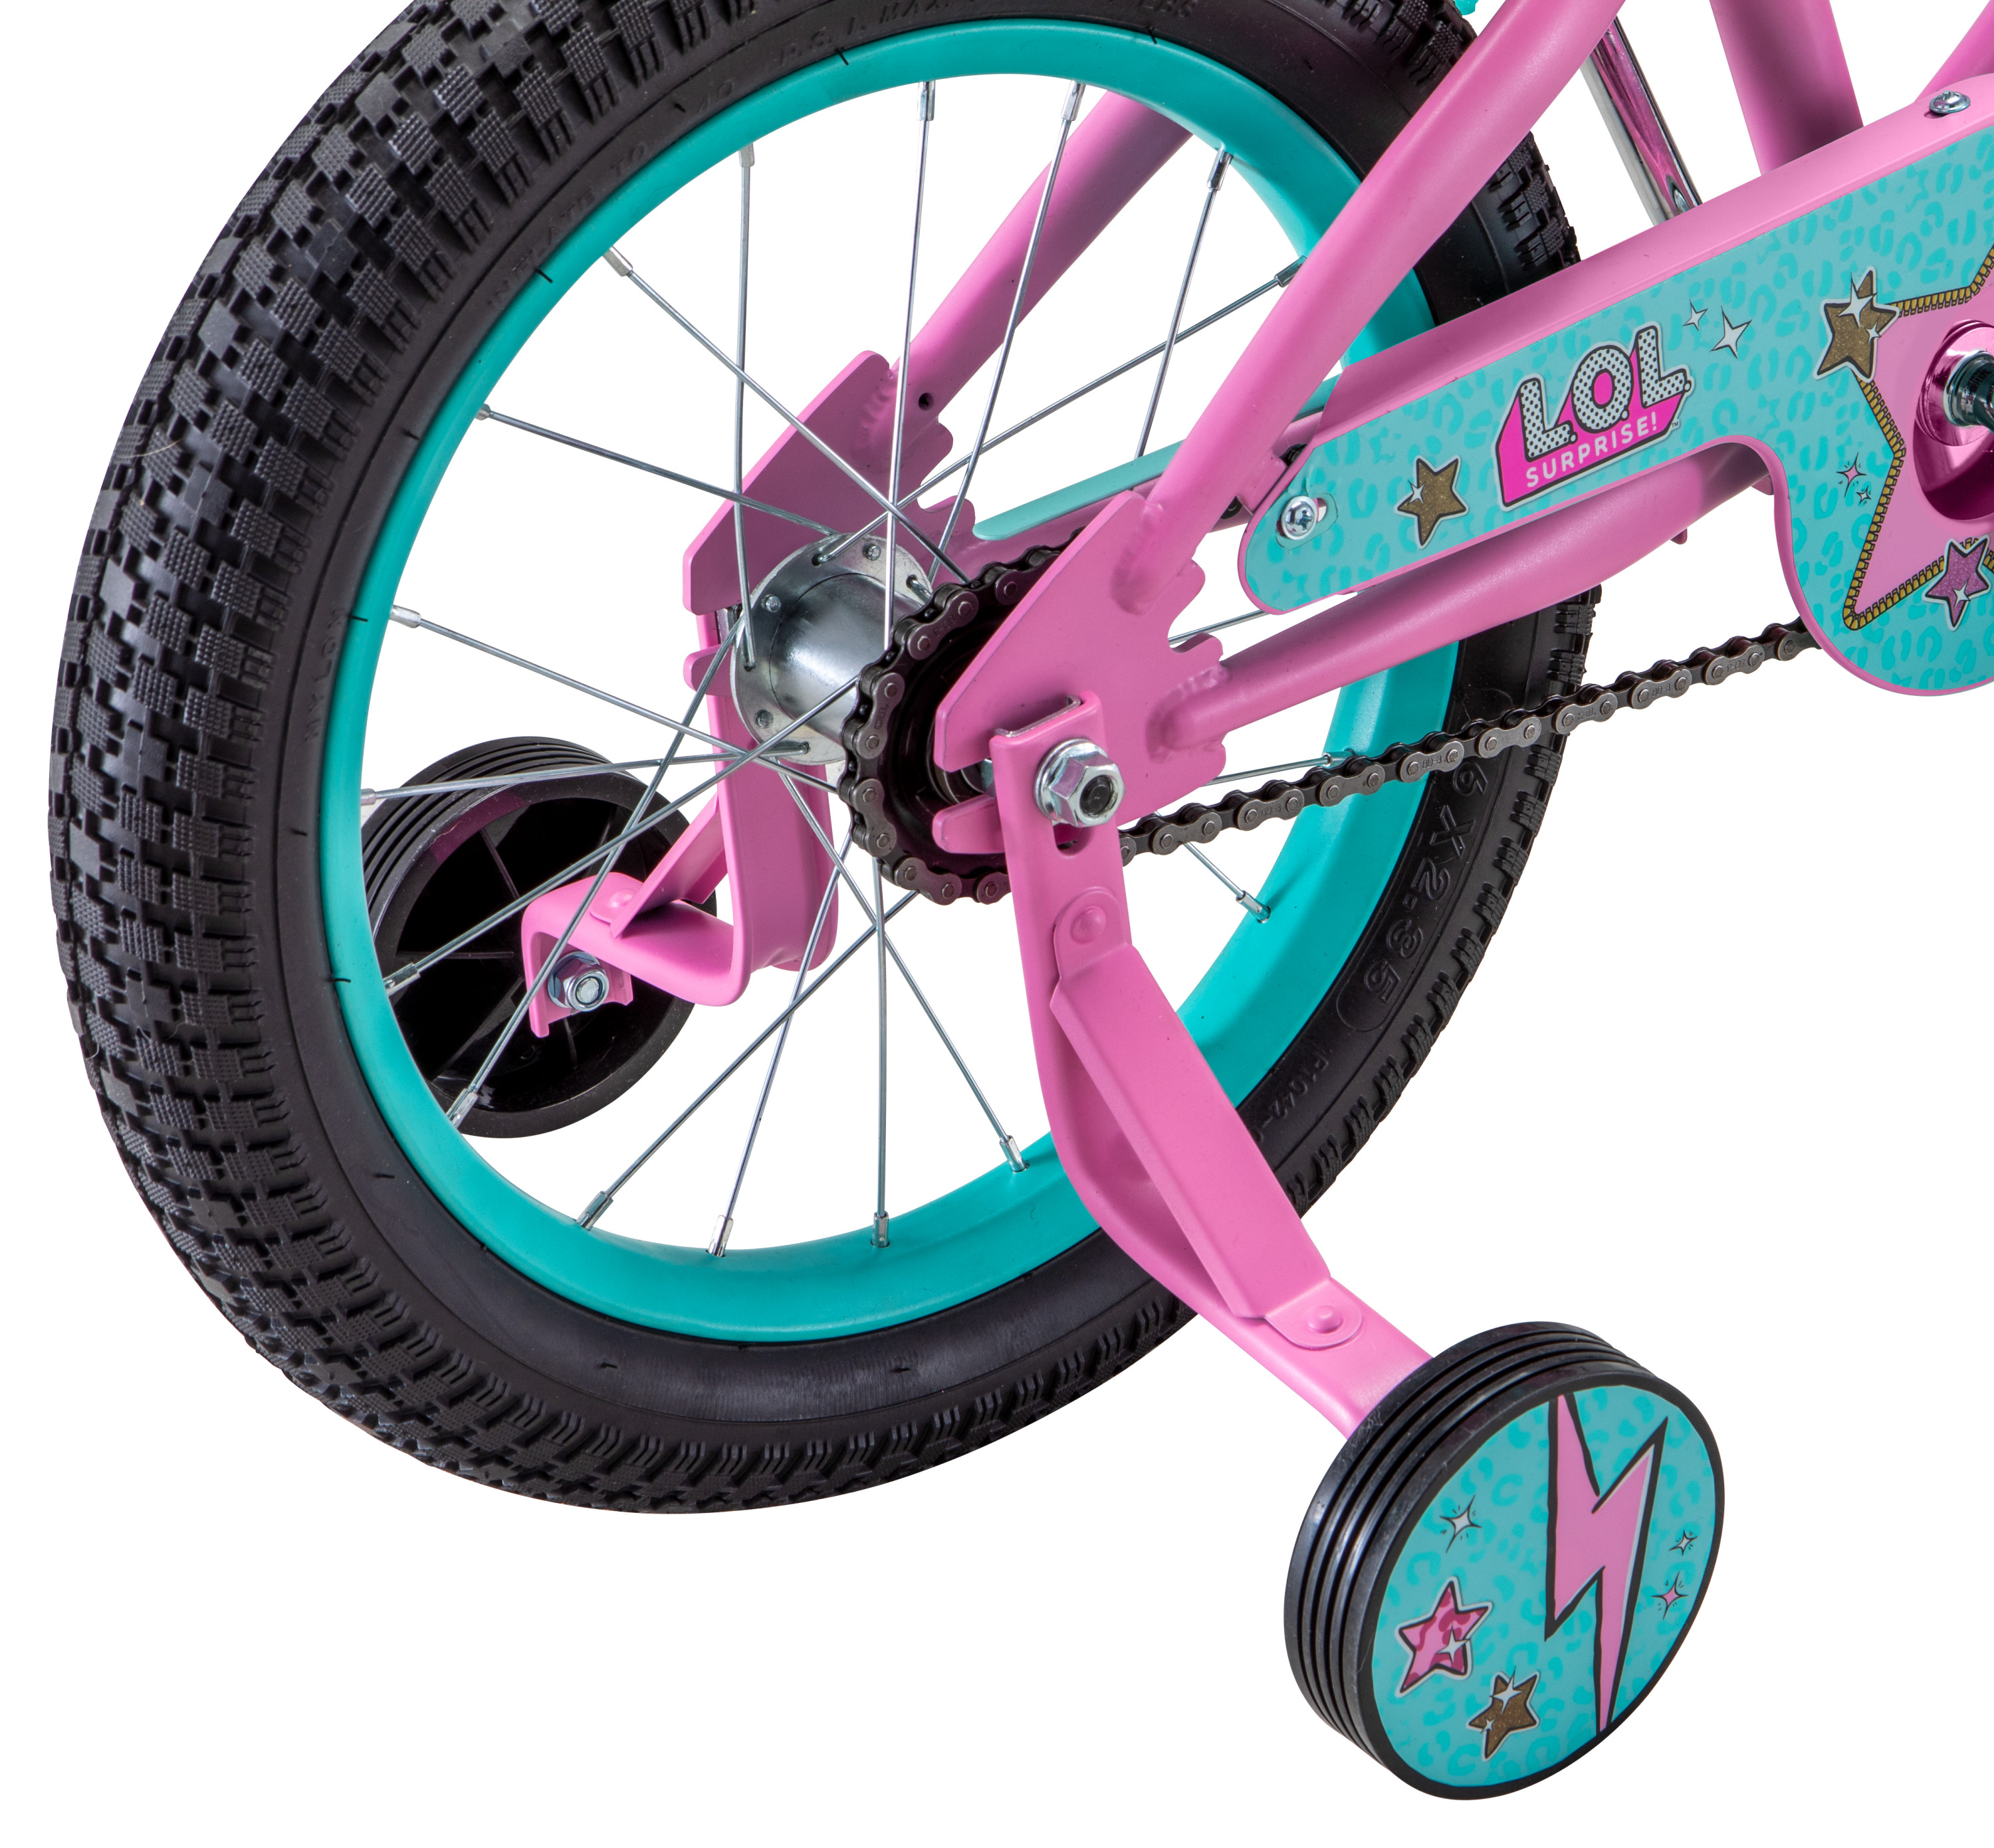 LOL Surprise kids bike, 16-inch wheel, Girls, Pink - image 3 of 9